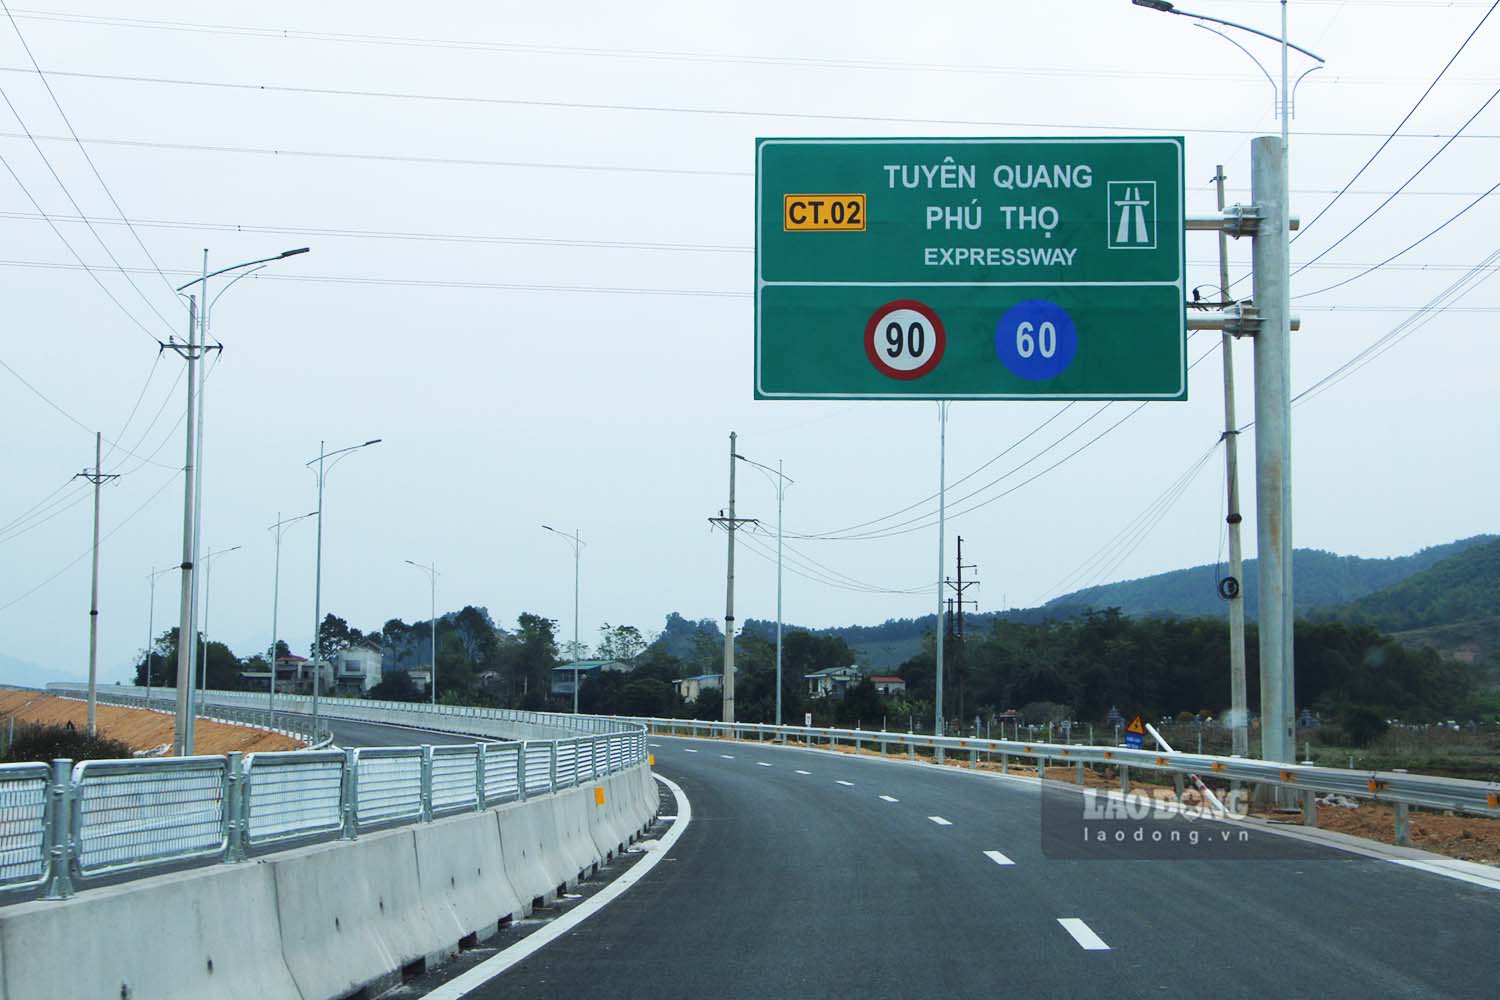 Cao tốc Tuyên Quang - Phú Thọ dài 40,2km, giúp rút ngắn 1/3 thời gian di chuyển từ TP Tuyên Quang đi Hà Nội. Ảnh: Nguyễn Tùng.